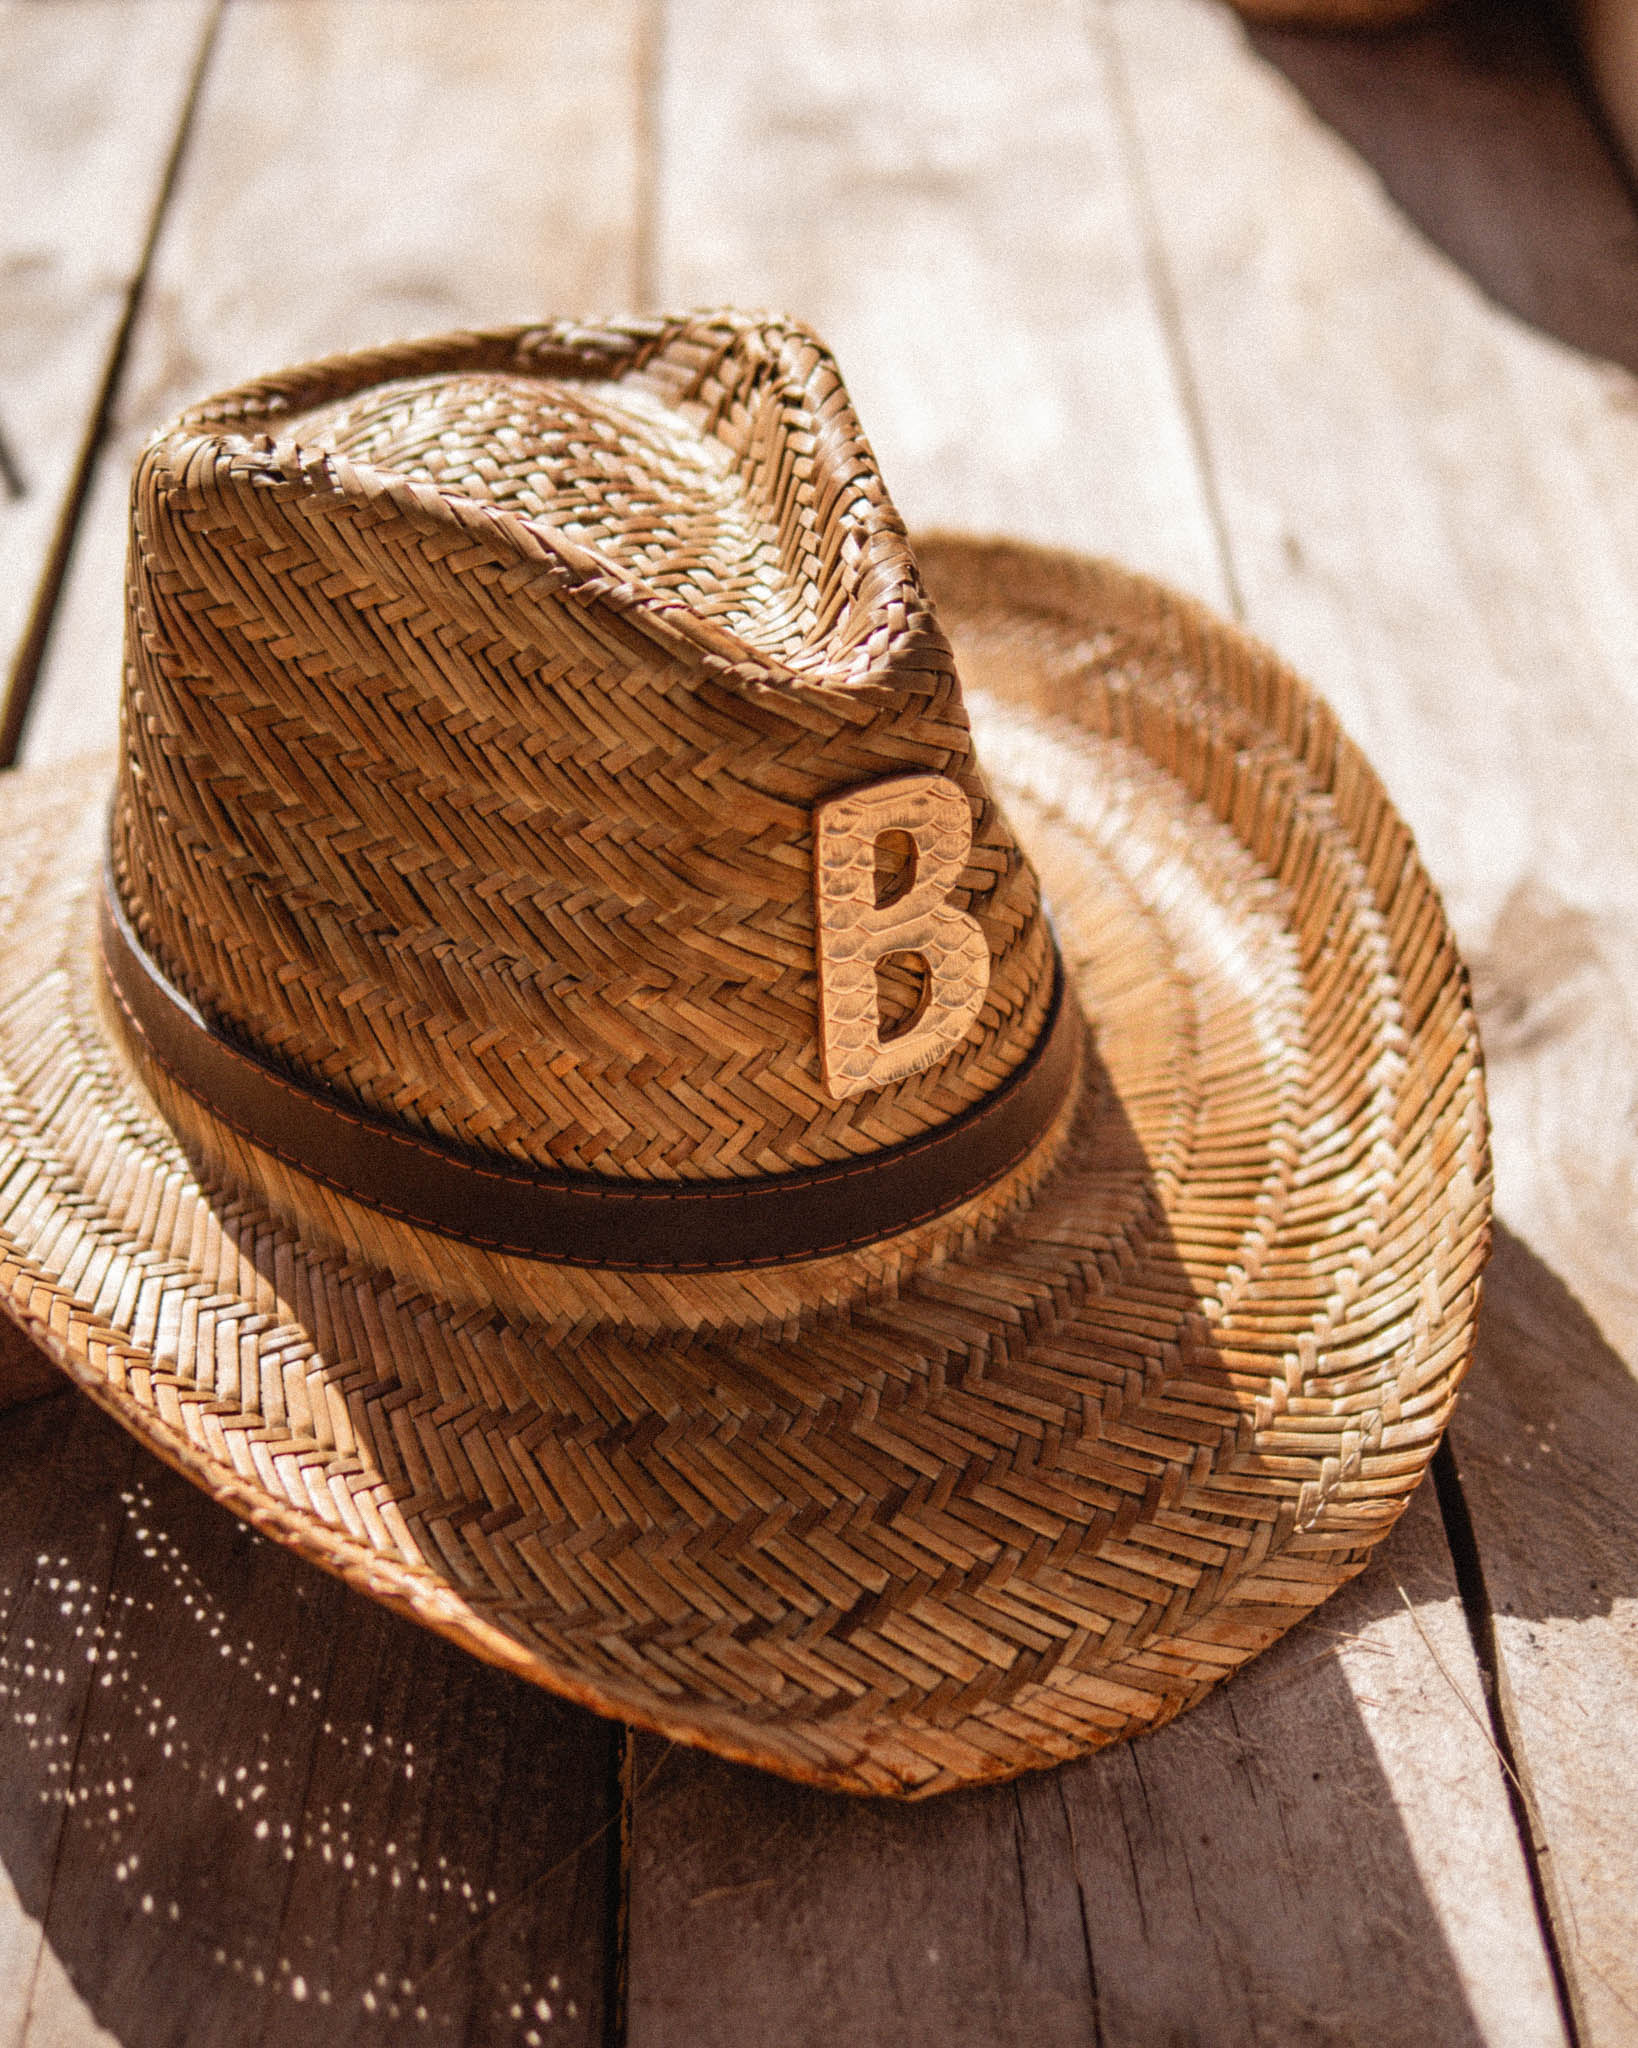 Sombrero Cowboy B dorada